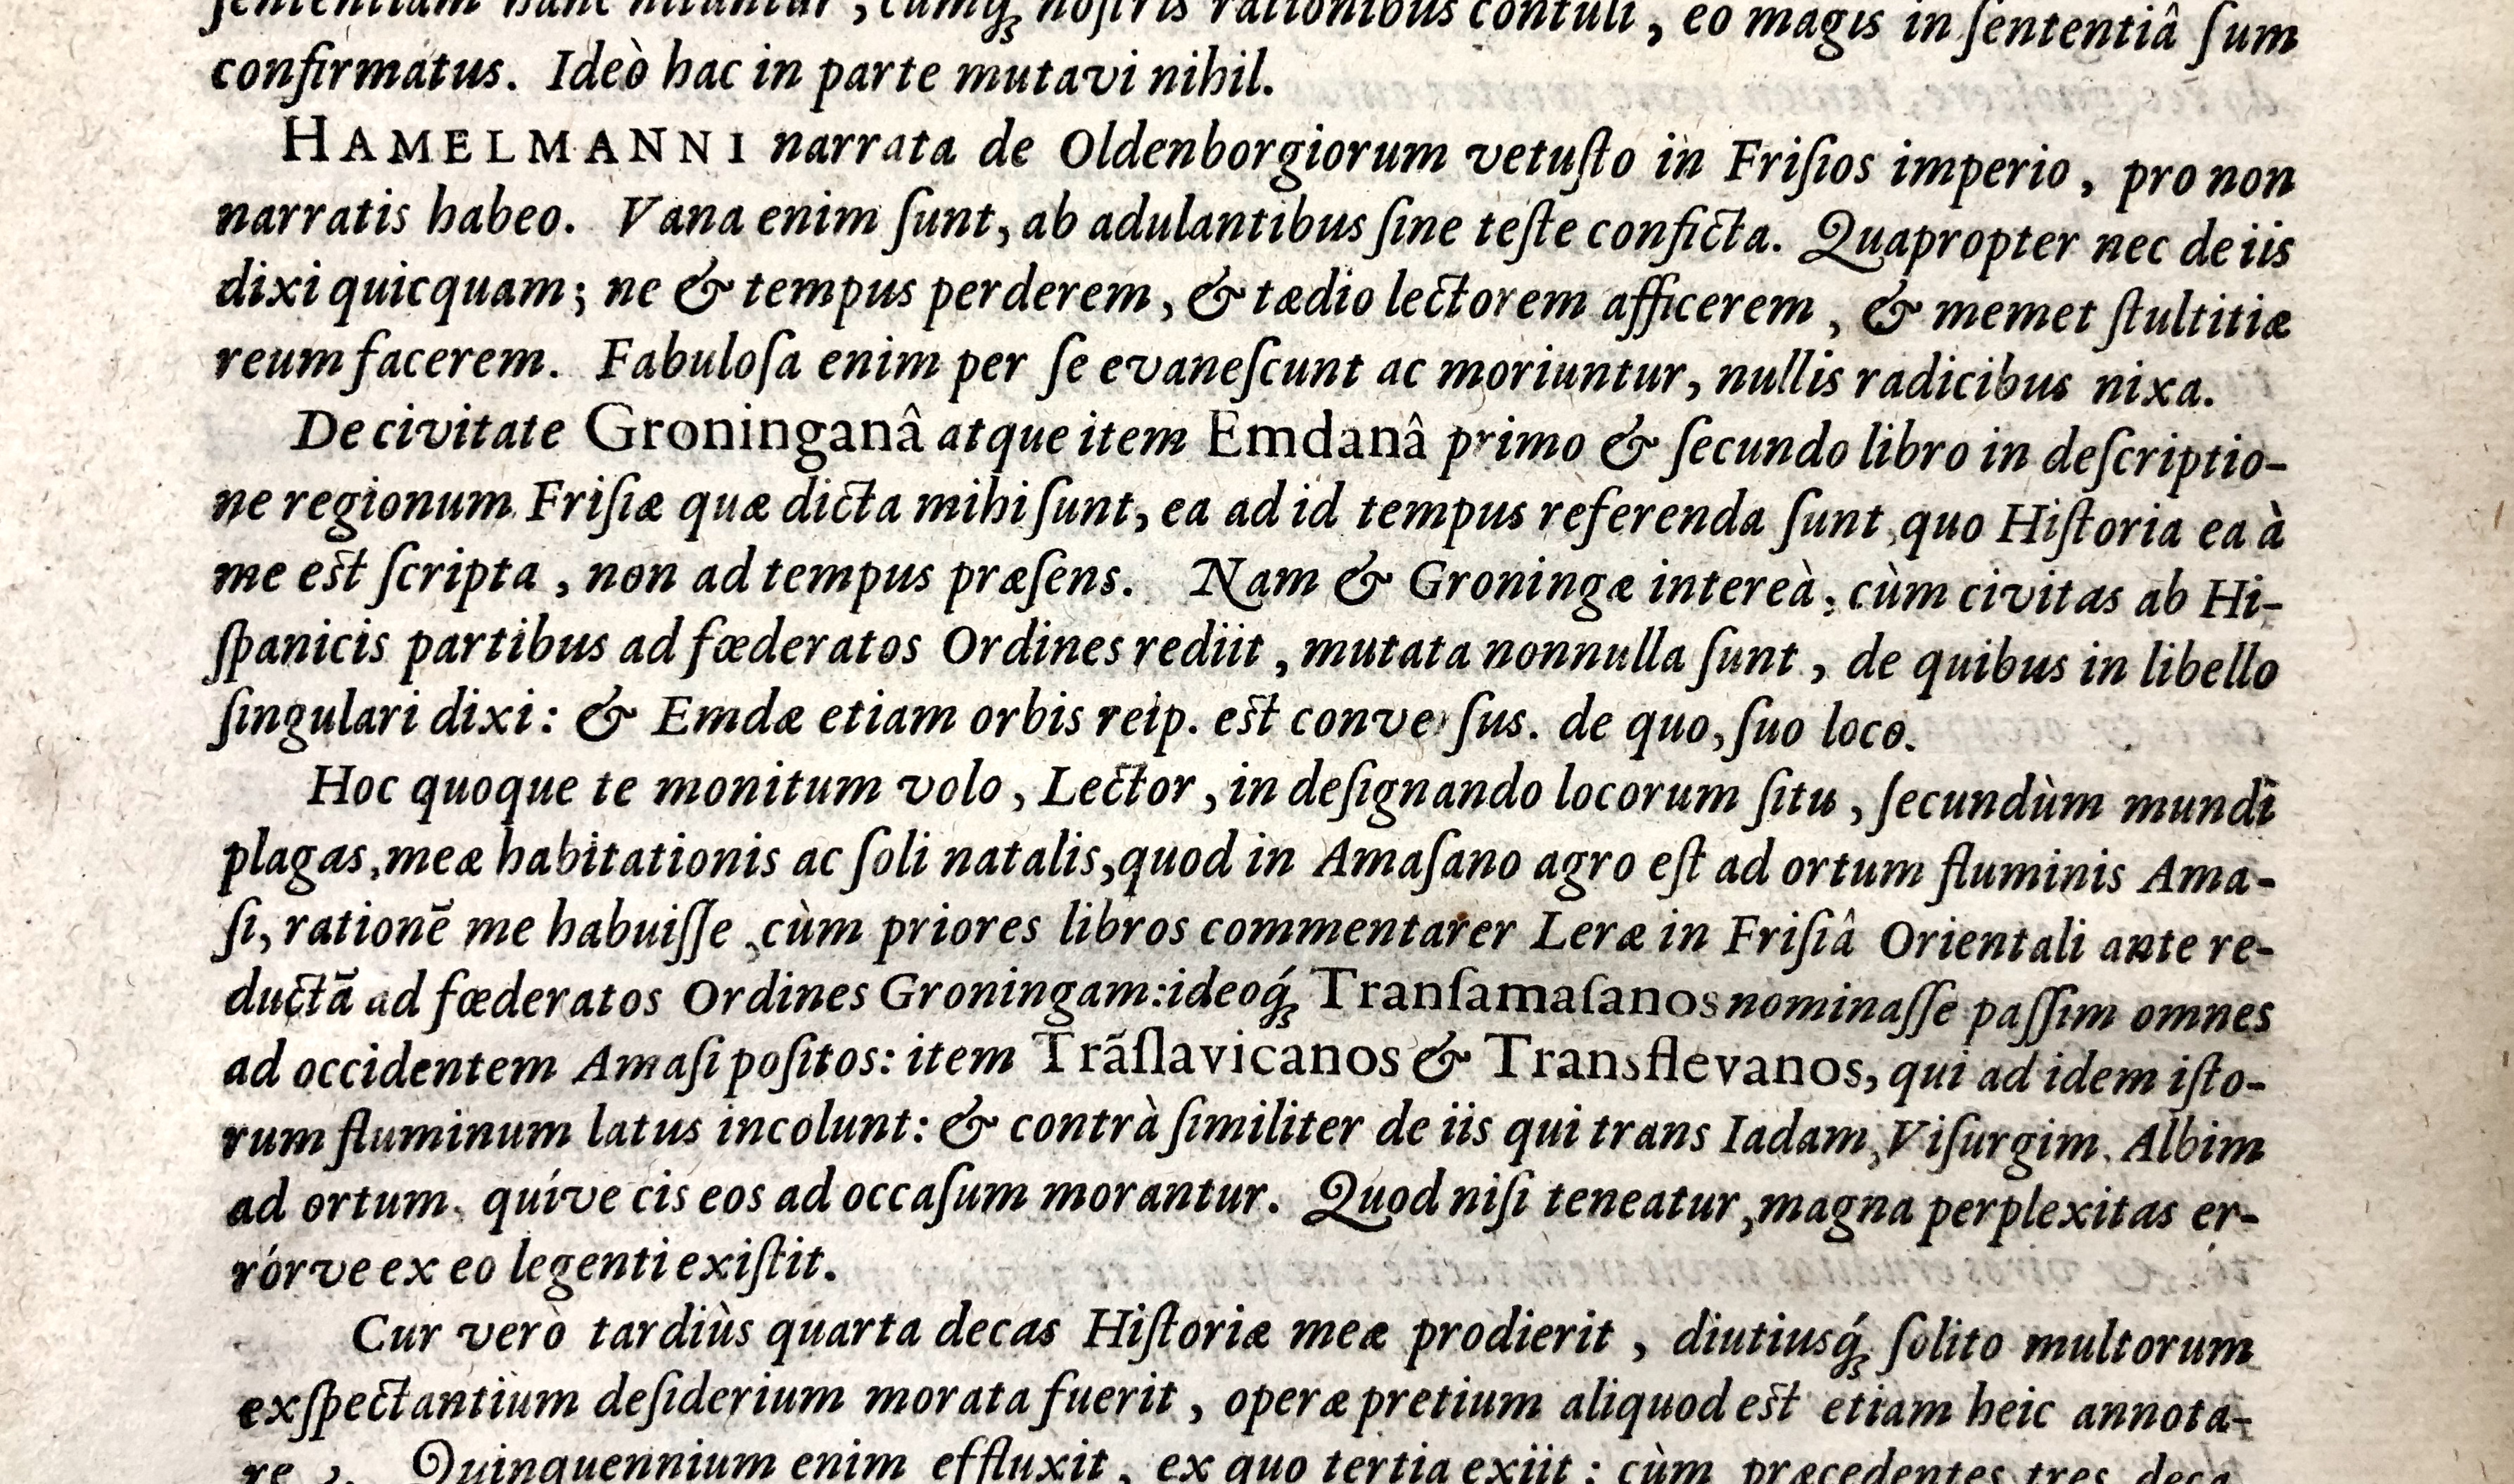 19. Ubbo Emmius, Rerum Frisicarum historia (Leiden 1616), fol. 2)(2v19. Ubbo Emmius, Rerum Frisicarum historia (Leiden 1616), fol. 2)(2v19. Ubbo Emmius, Rerum Frisicarum historia (Leiden 1616), fol. 2)(2v